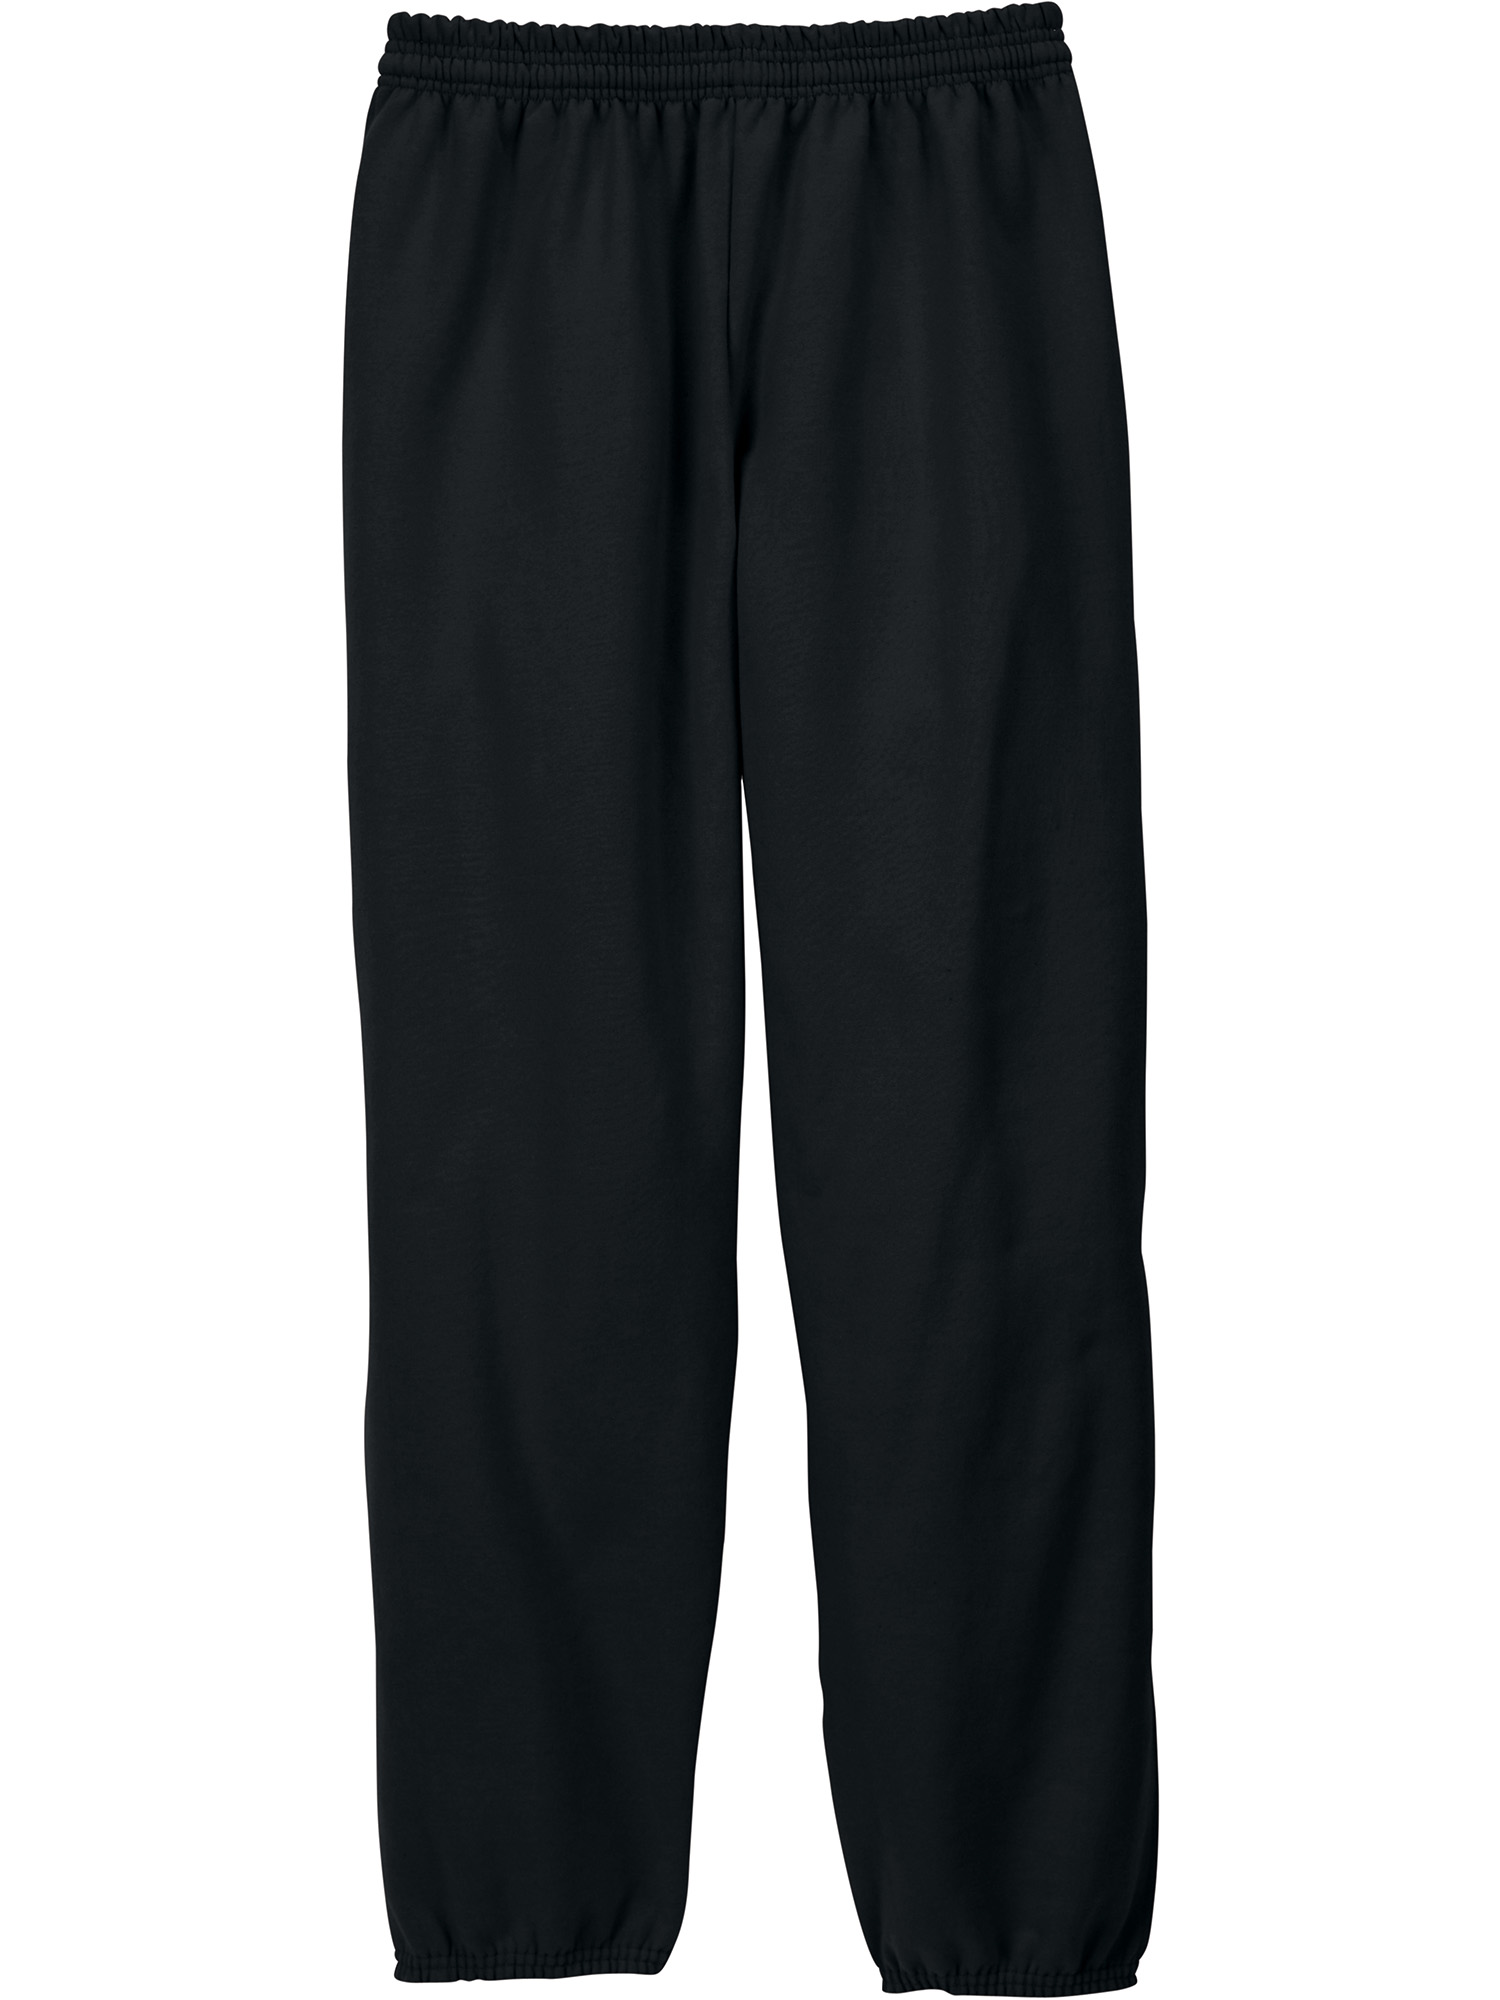 Hanes Men's and Big Men's EcoSmart Fleece Sweatpants, up to Size 3XL - image 4 of 7